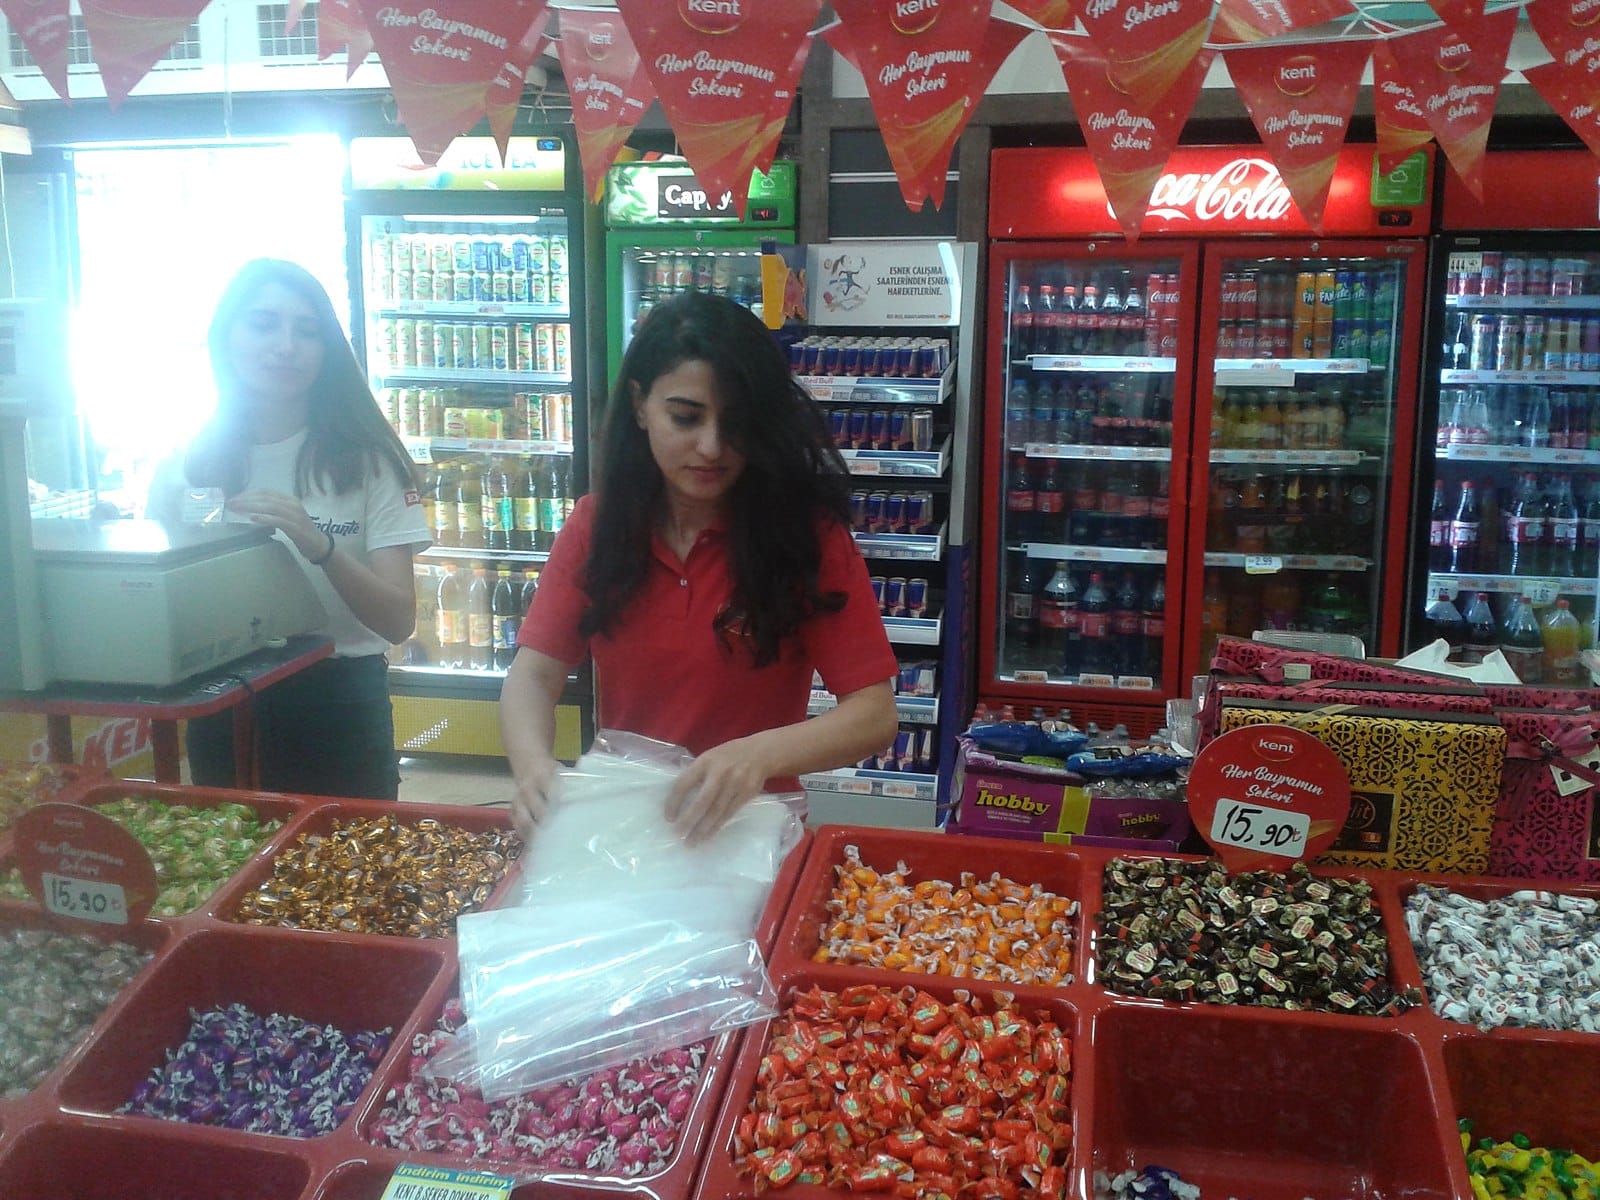 Şeker Bayramı, популярное название Ид аль-Фитр в Турции, на фото магазин в Анкаре специально открытый для продажи конфет, шоколада и десертов перед праздником.